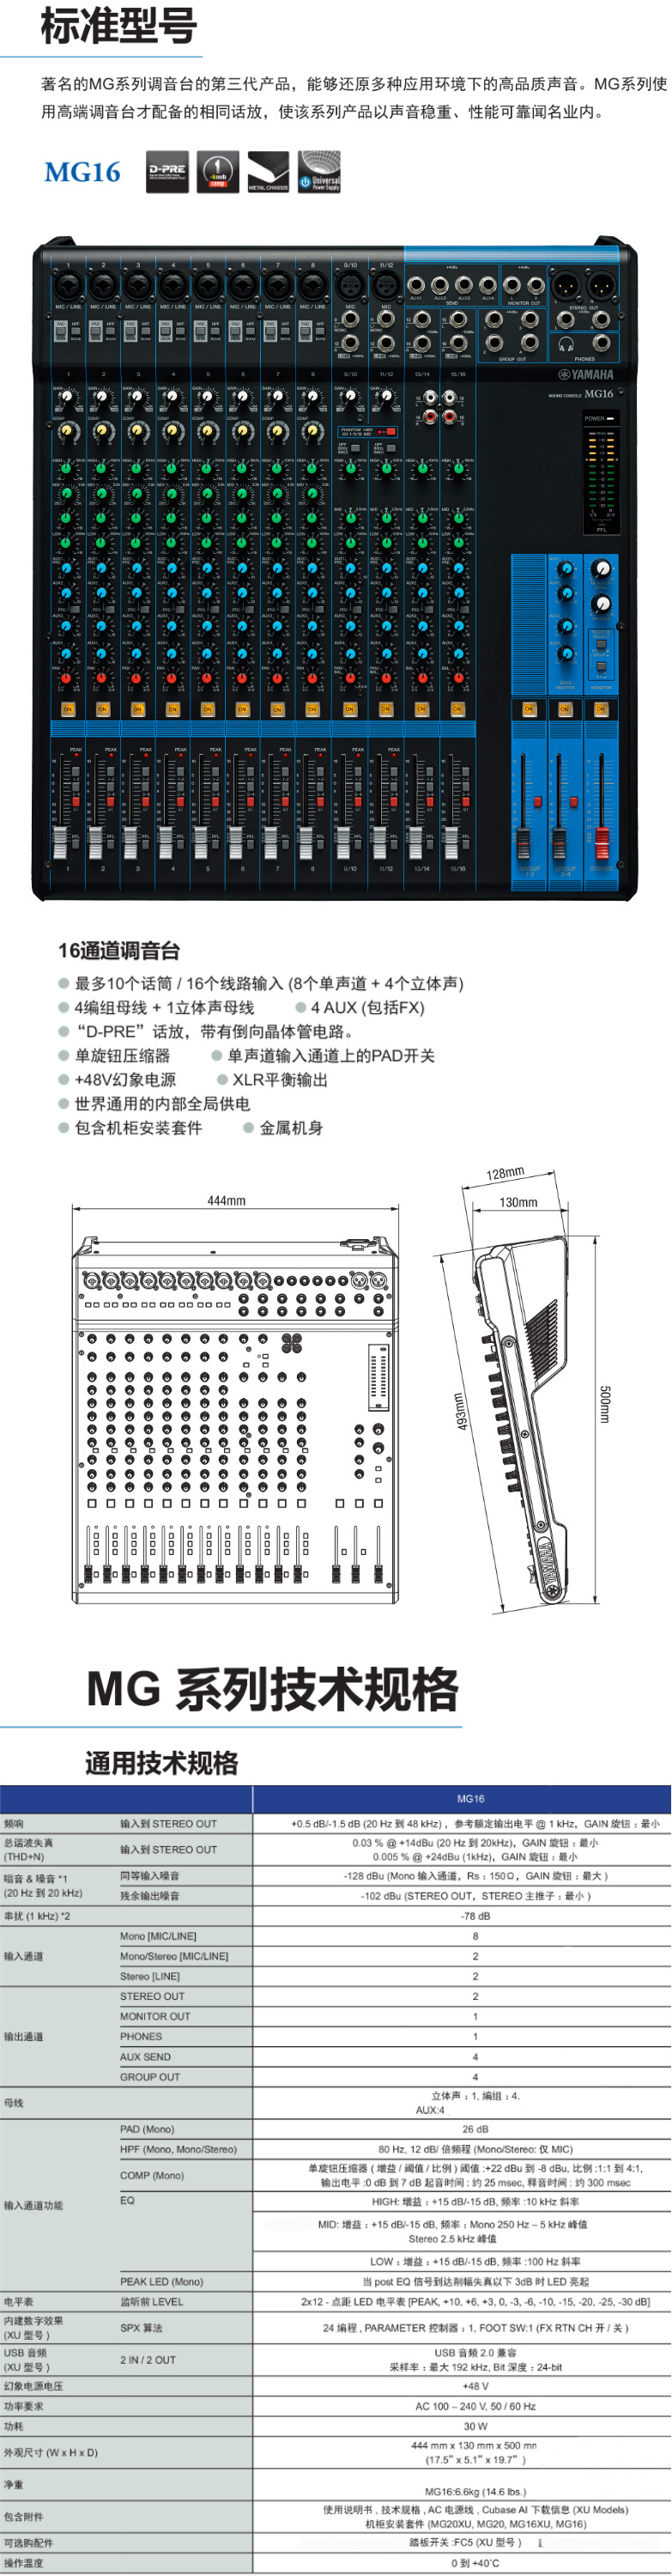 雅马哈mg166cx中文图解图片